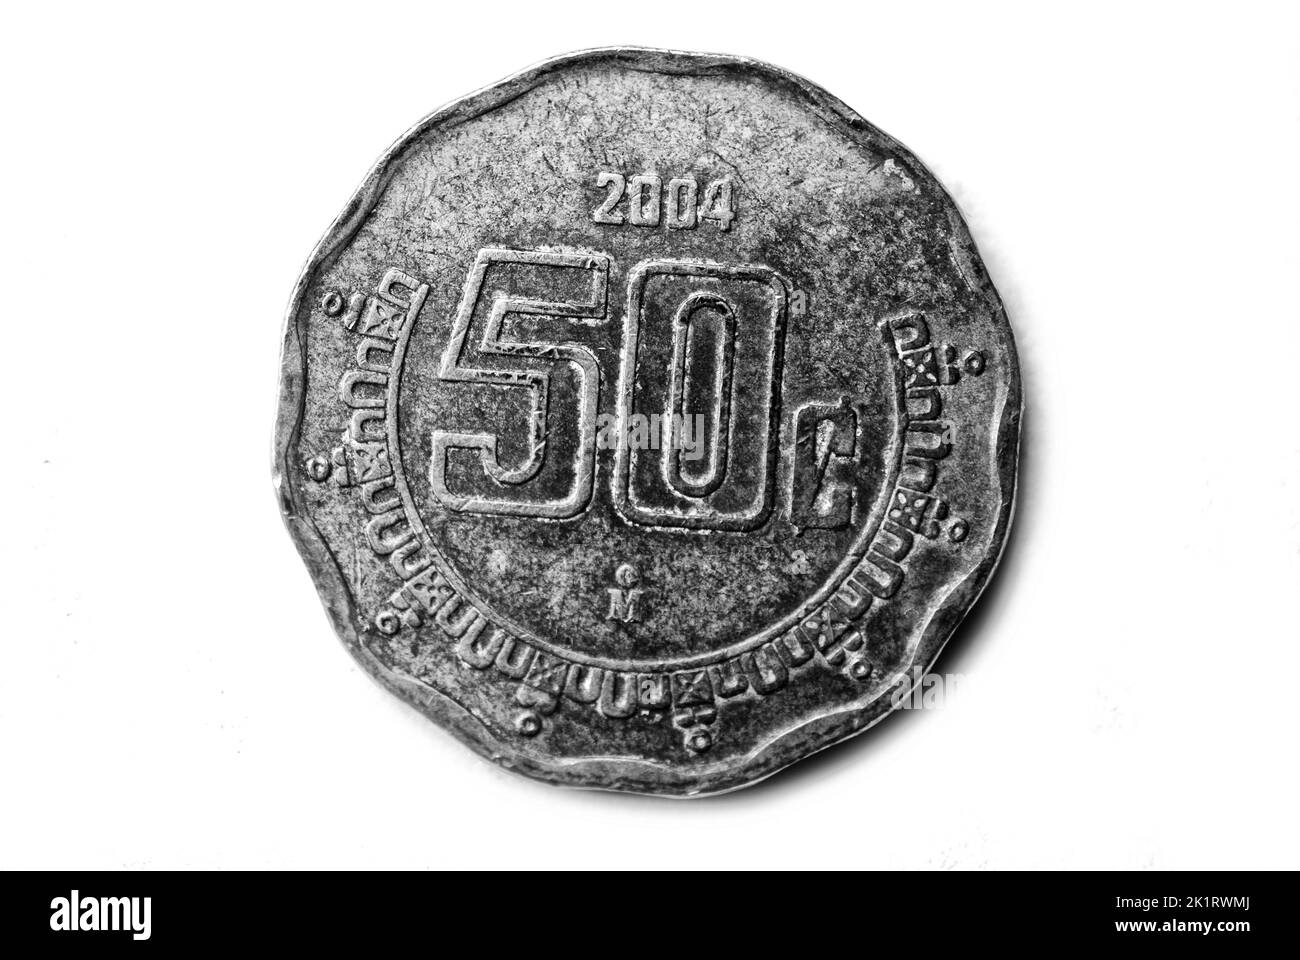 Photo coins Mexico,  2004,50 Centavos, Stock Photo